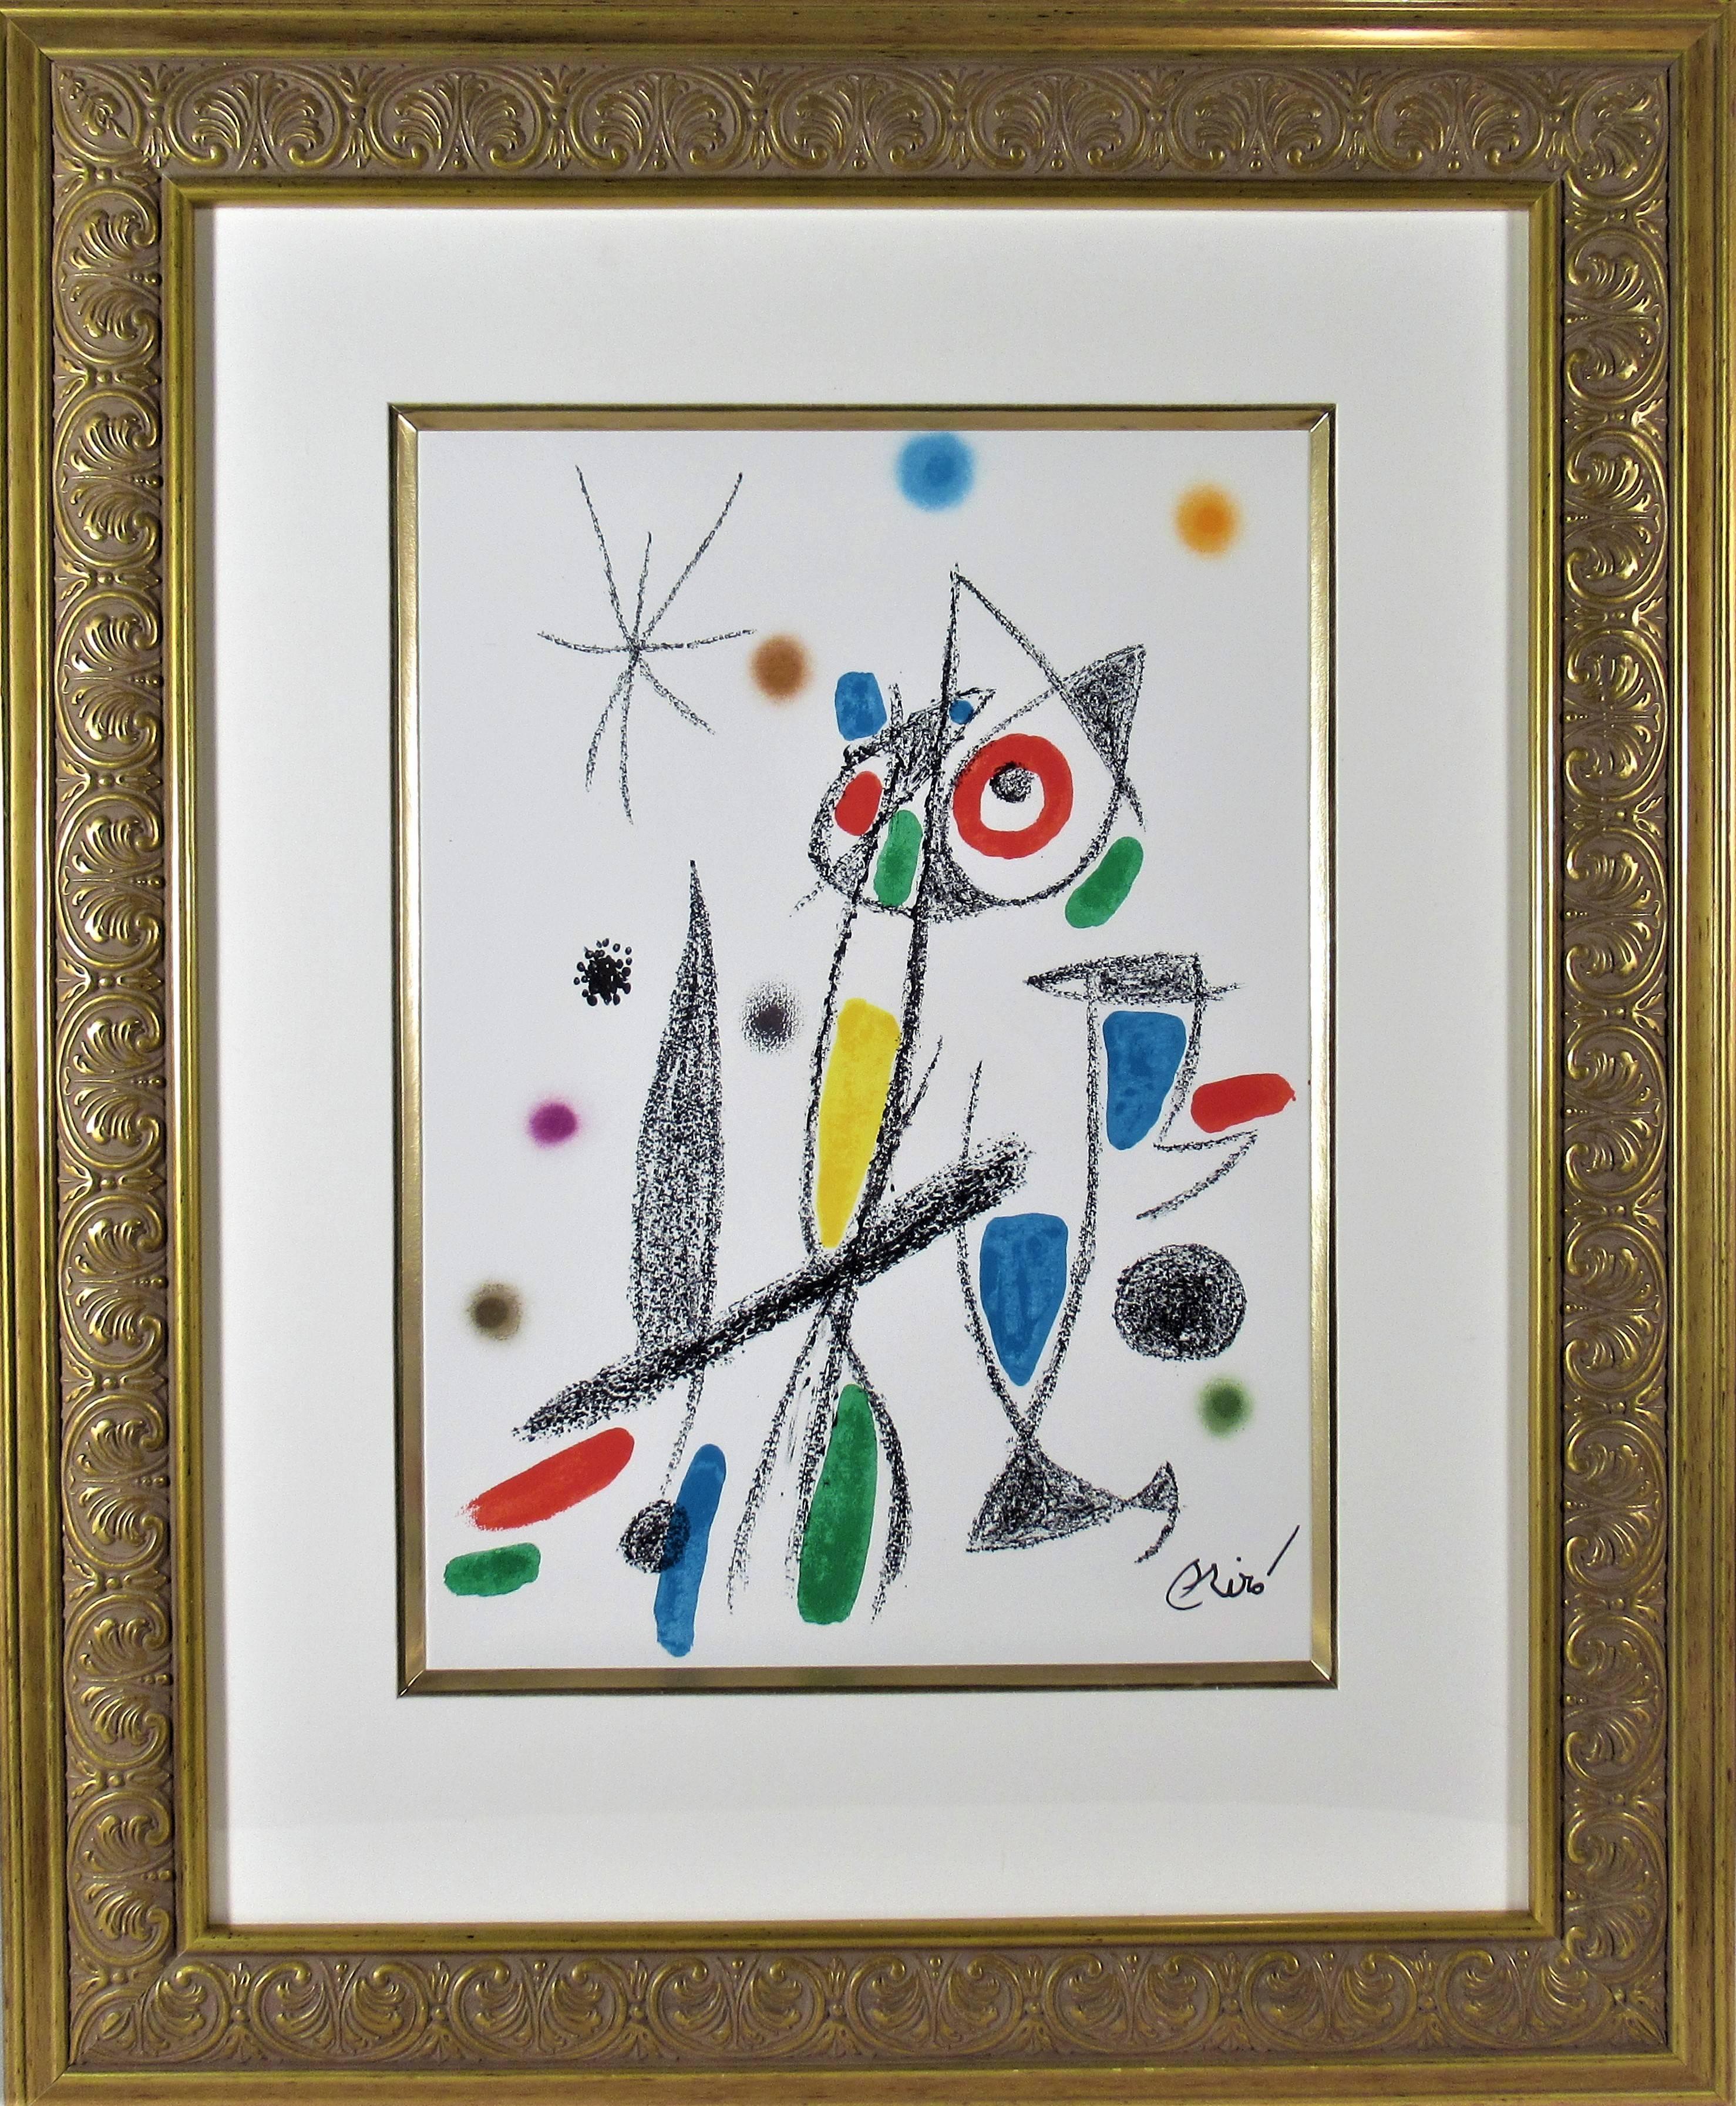 Joan Miró Abstract Print - Maravillas Con Variations Acrosticas en el Jardin de Miro